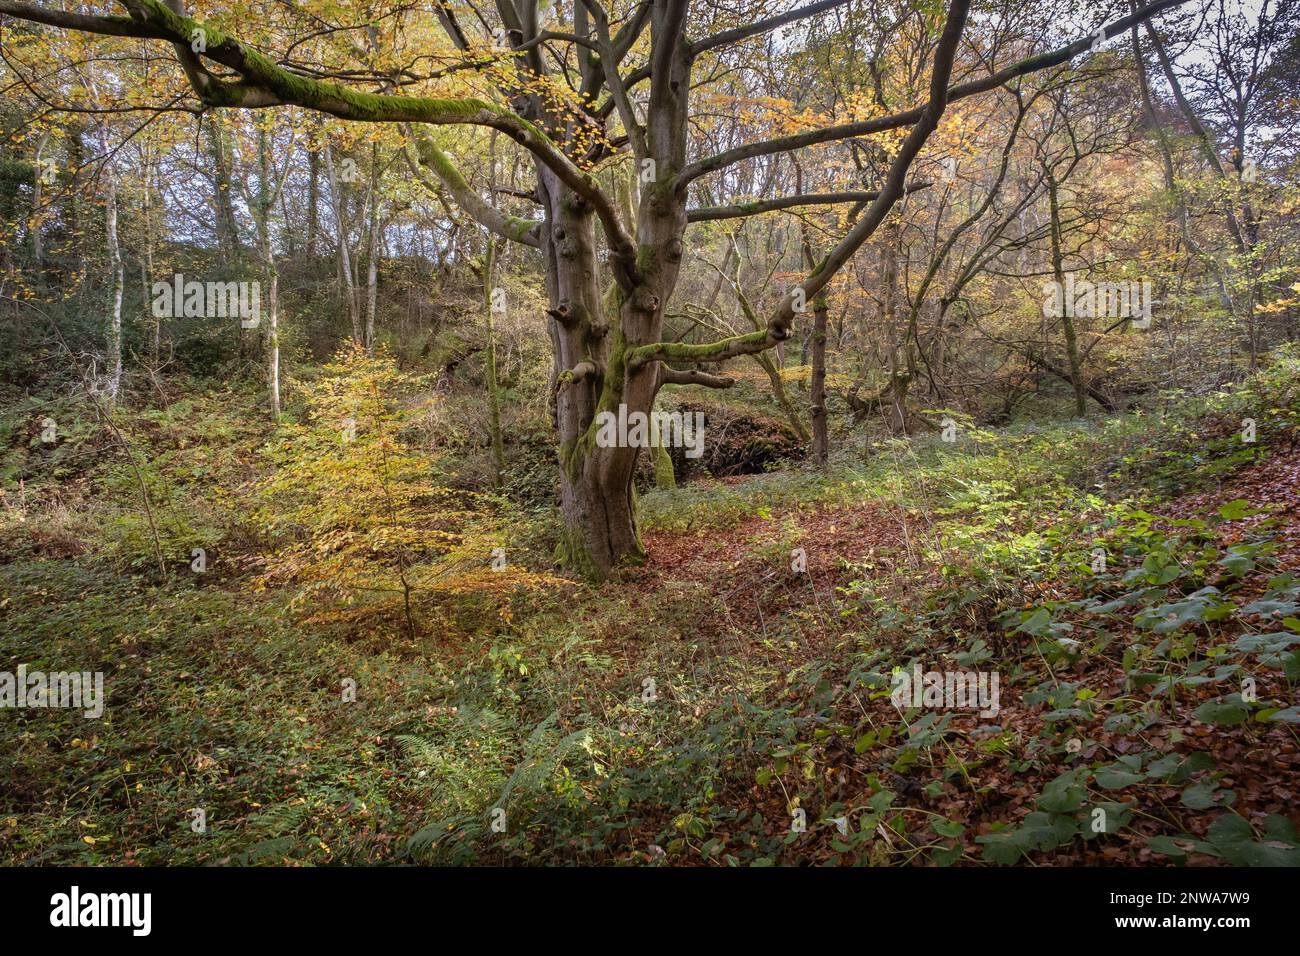 Chemin de la campagne anglaise à travers les bois anciens une forêt de hêtre décidus dans le nord de l'Angleterre Banque D'Images